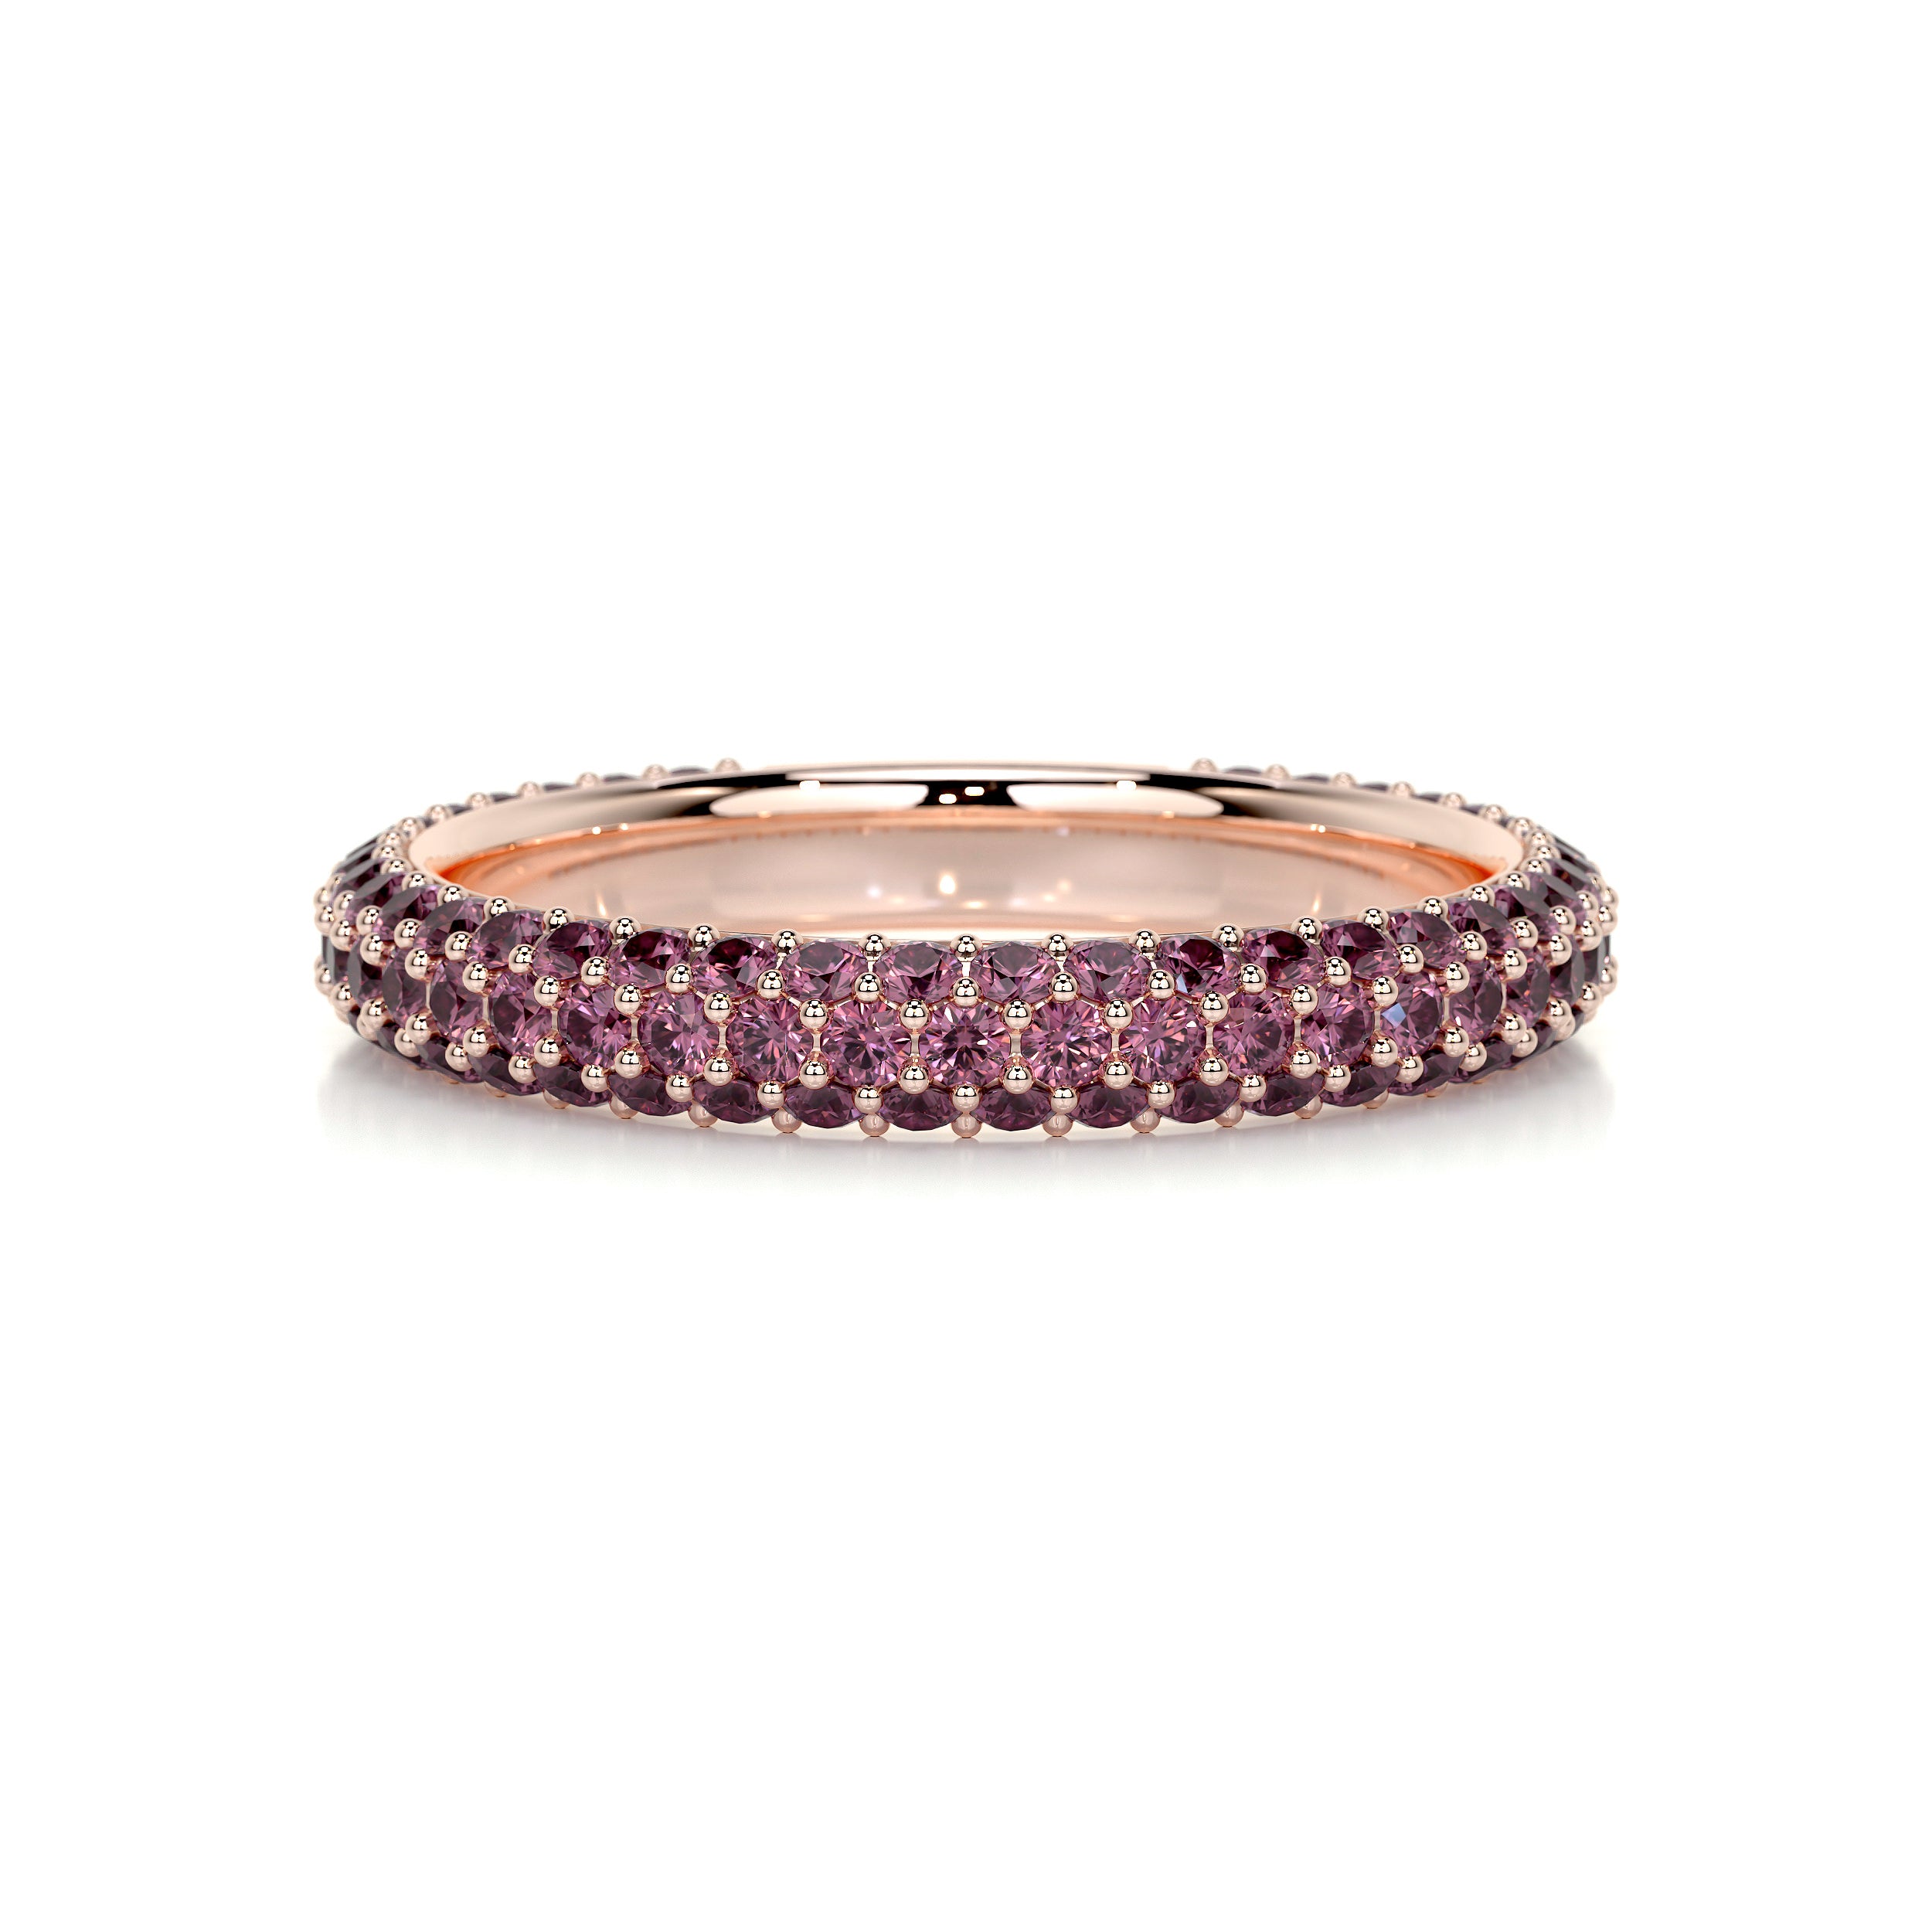 Emma Pink Gemstone Wedding Ring   (1.25 Carat) - 14K Rose Gold